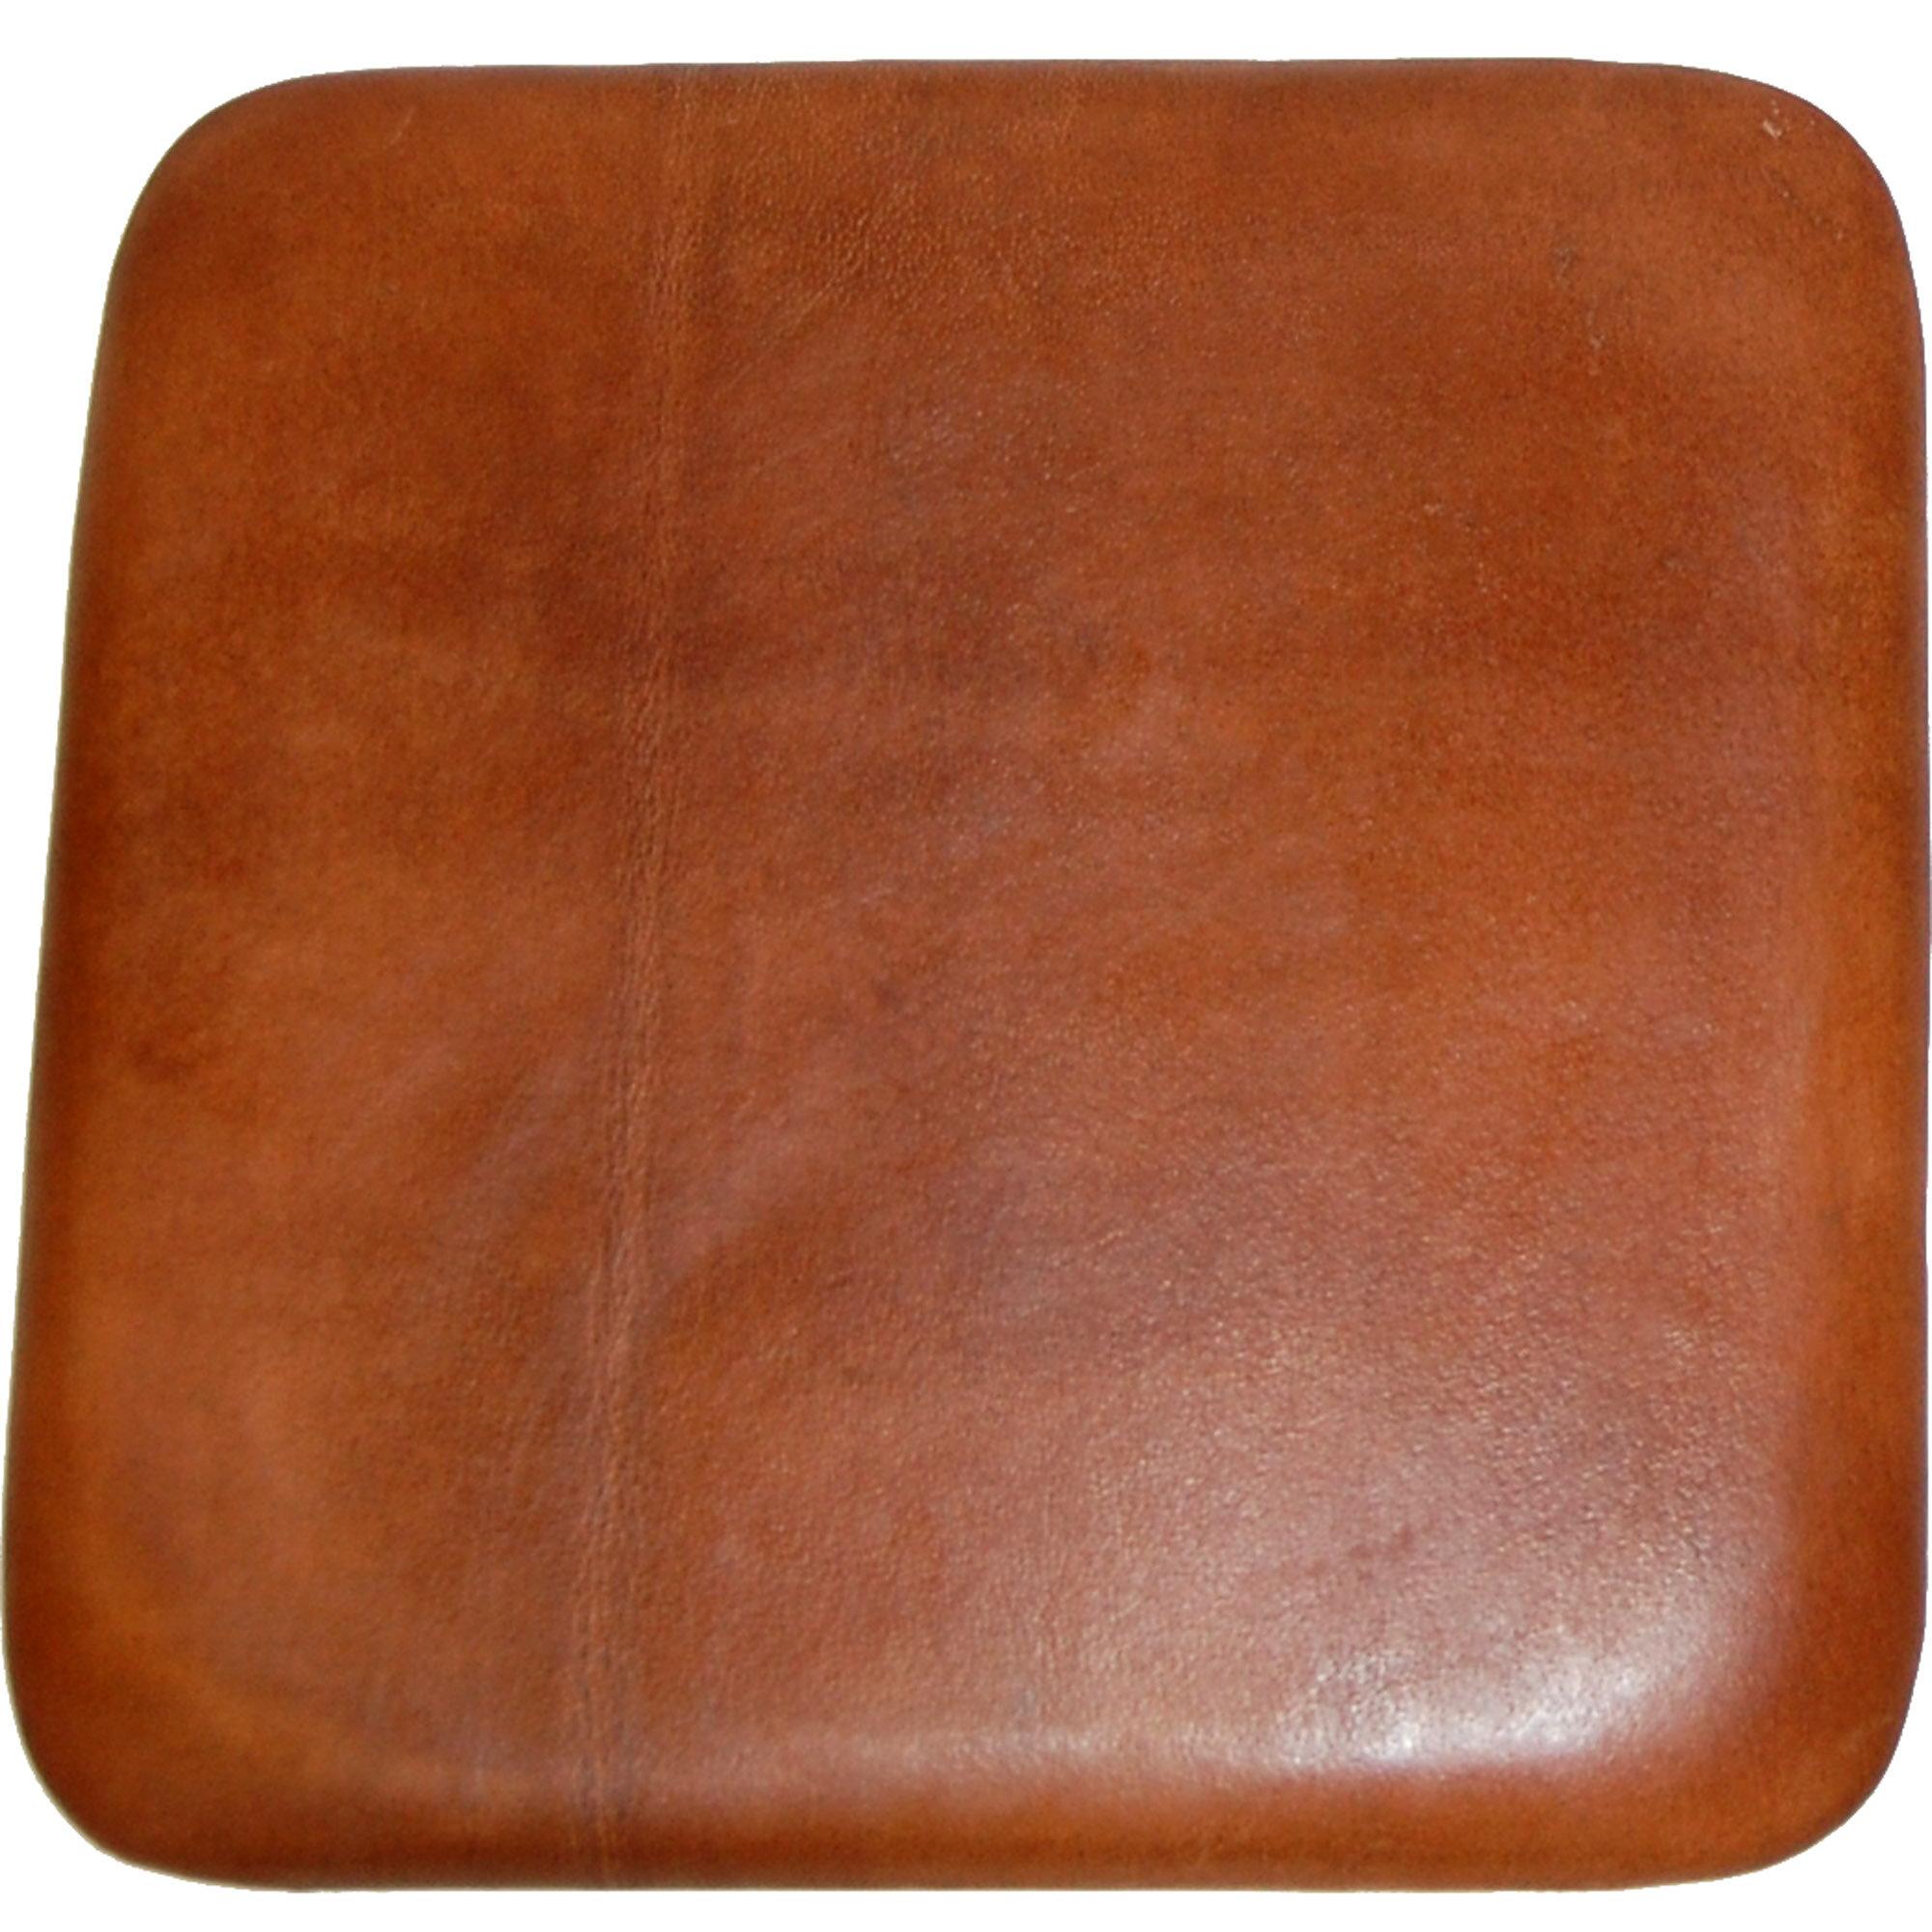  Sædehynde i brunt læder til barstol M110005 og M11004 fra Trademark Living i Læder (Varenr: M1404)